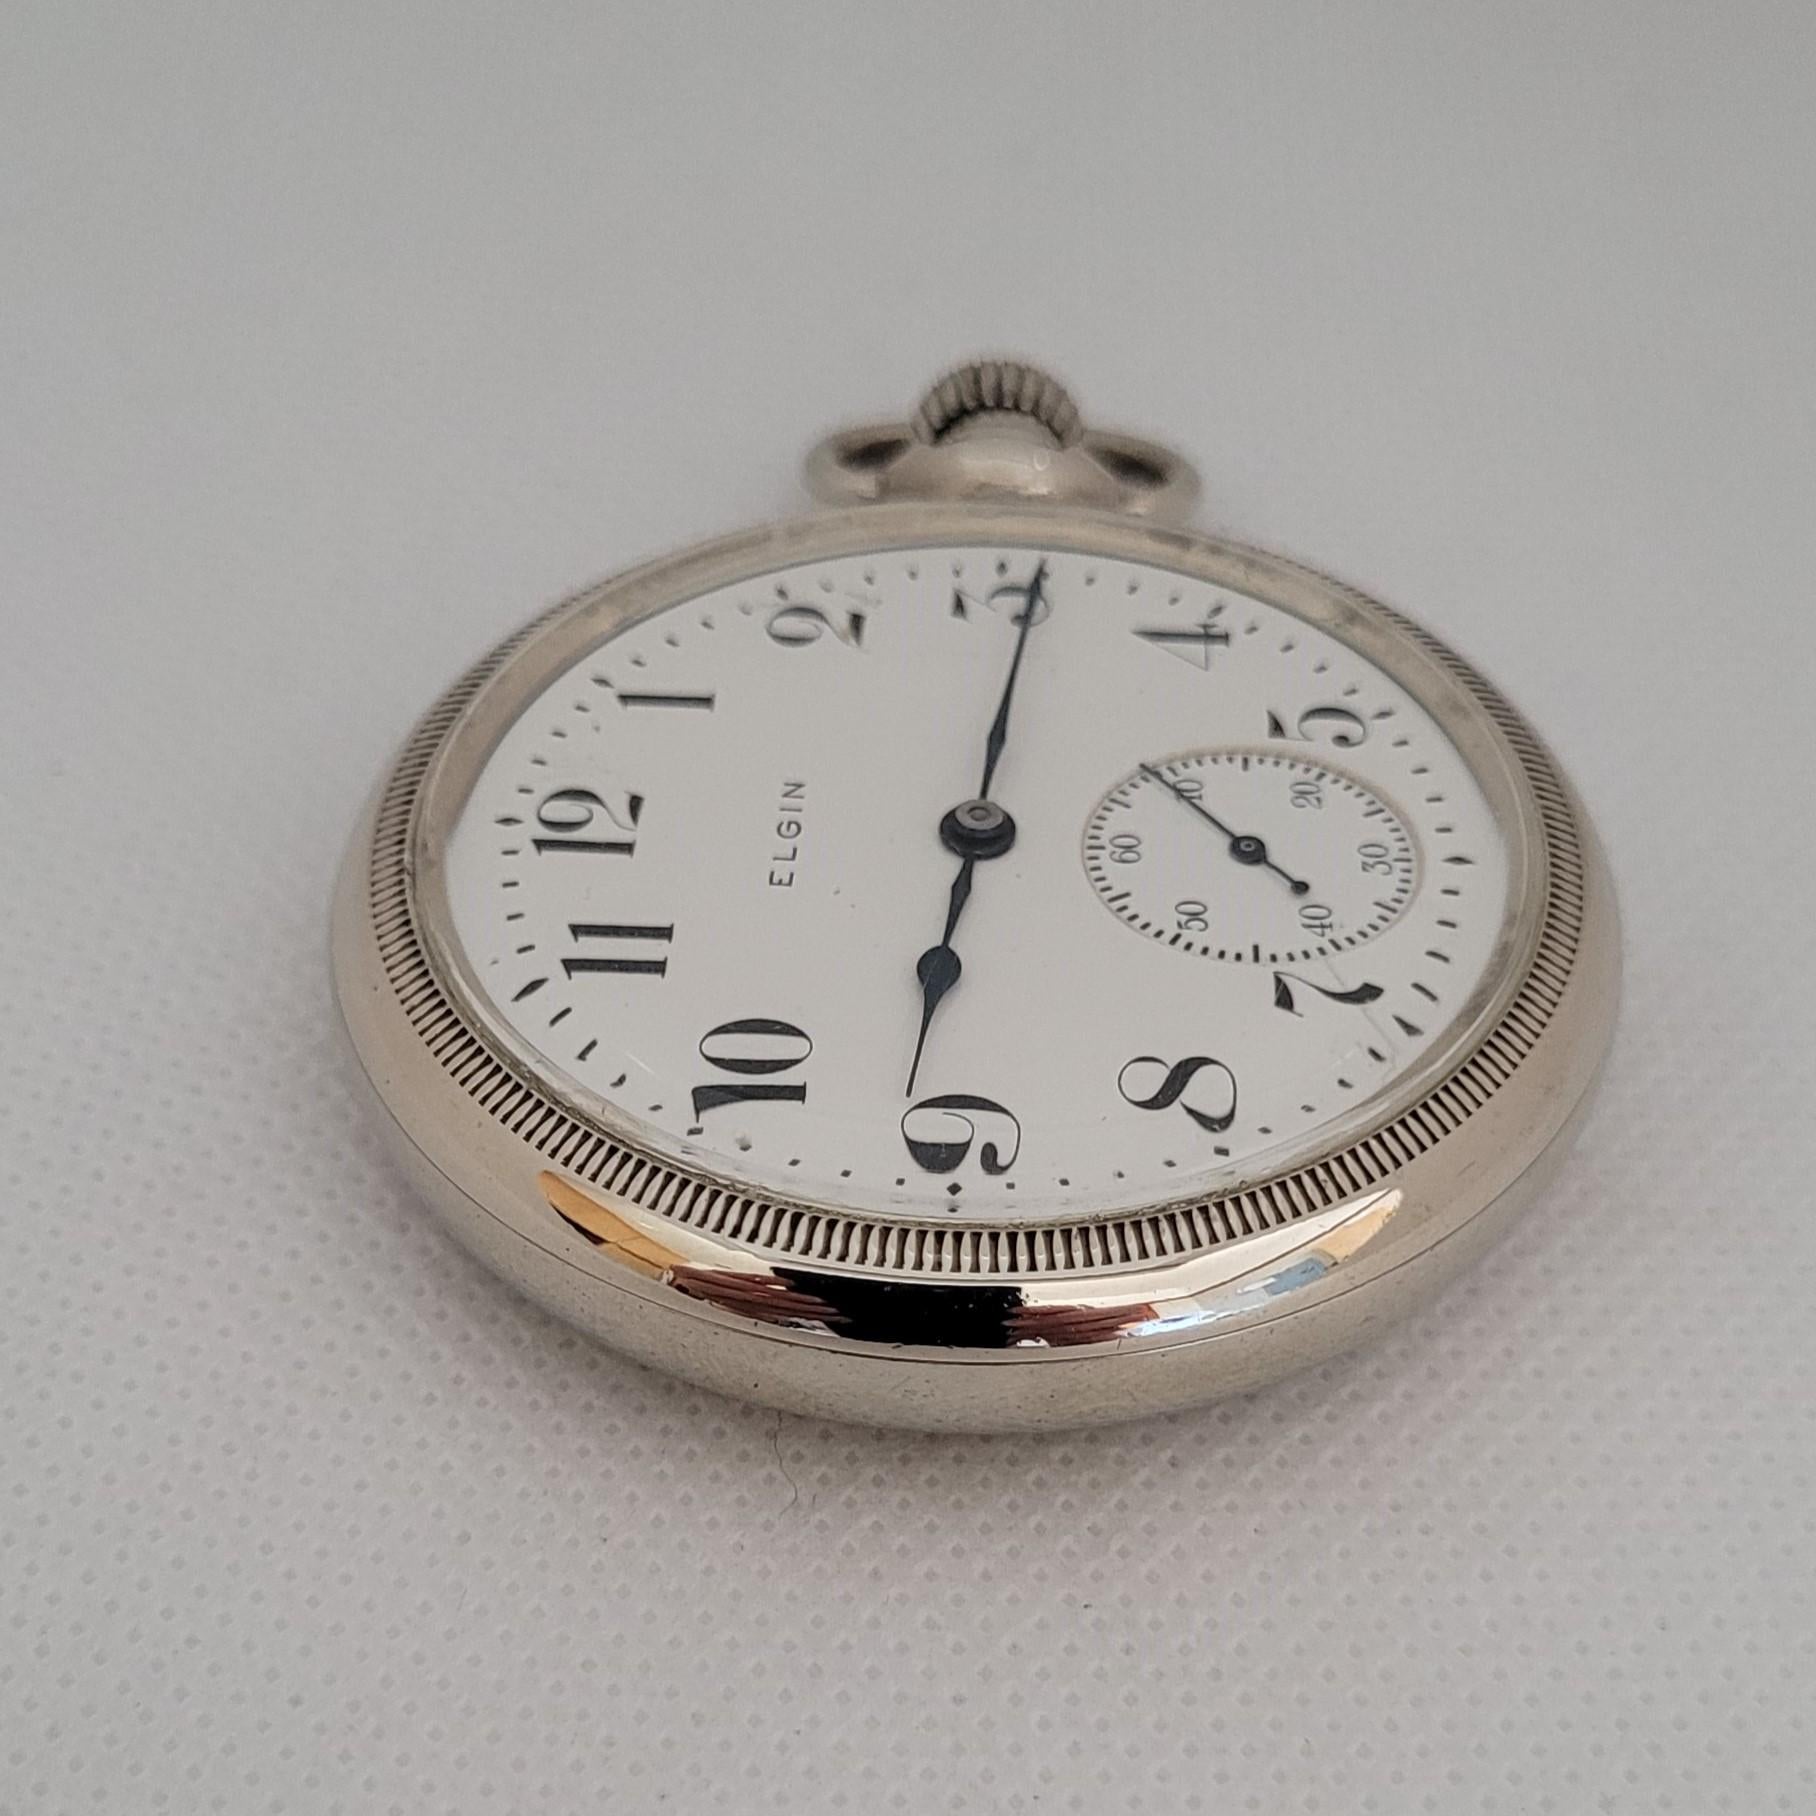 Cette montre de poche Elgin 1906 de 53 mm à cadran blanc est une pièce d'horlogerie étonnante, fabriquée avec précision et élégance. Pesant 95,9 grammes, cette montre de couleur argentée est non seulement attrayante sur le plan visuel, mais elle est